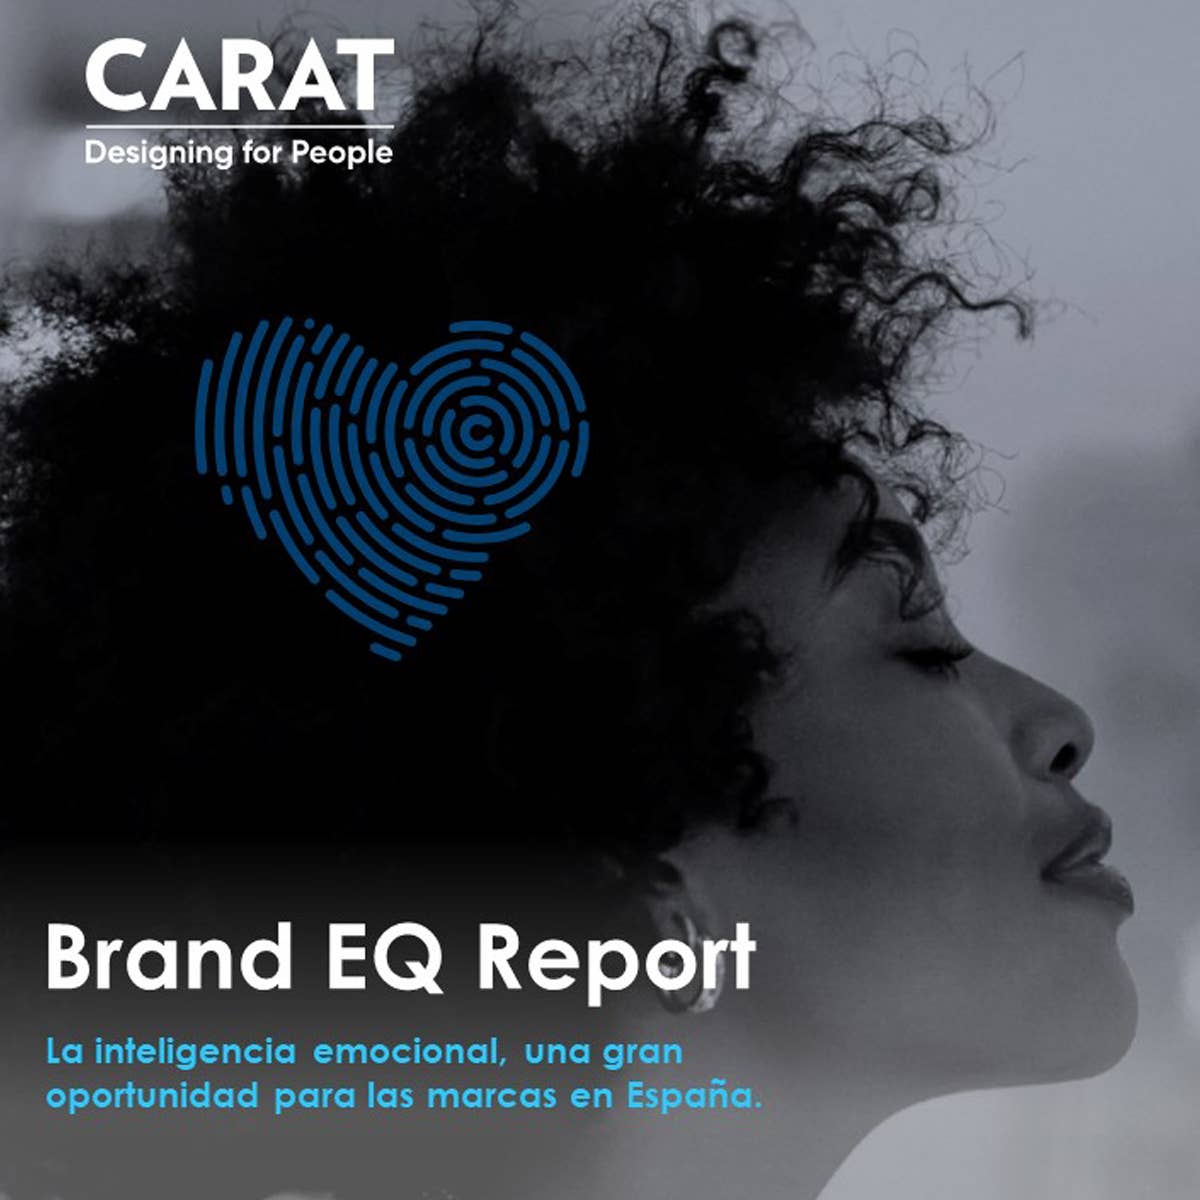 BRAND EQ REPORT: La inteligencia emocional, una gran 
oportunidad para las marcas en España